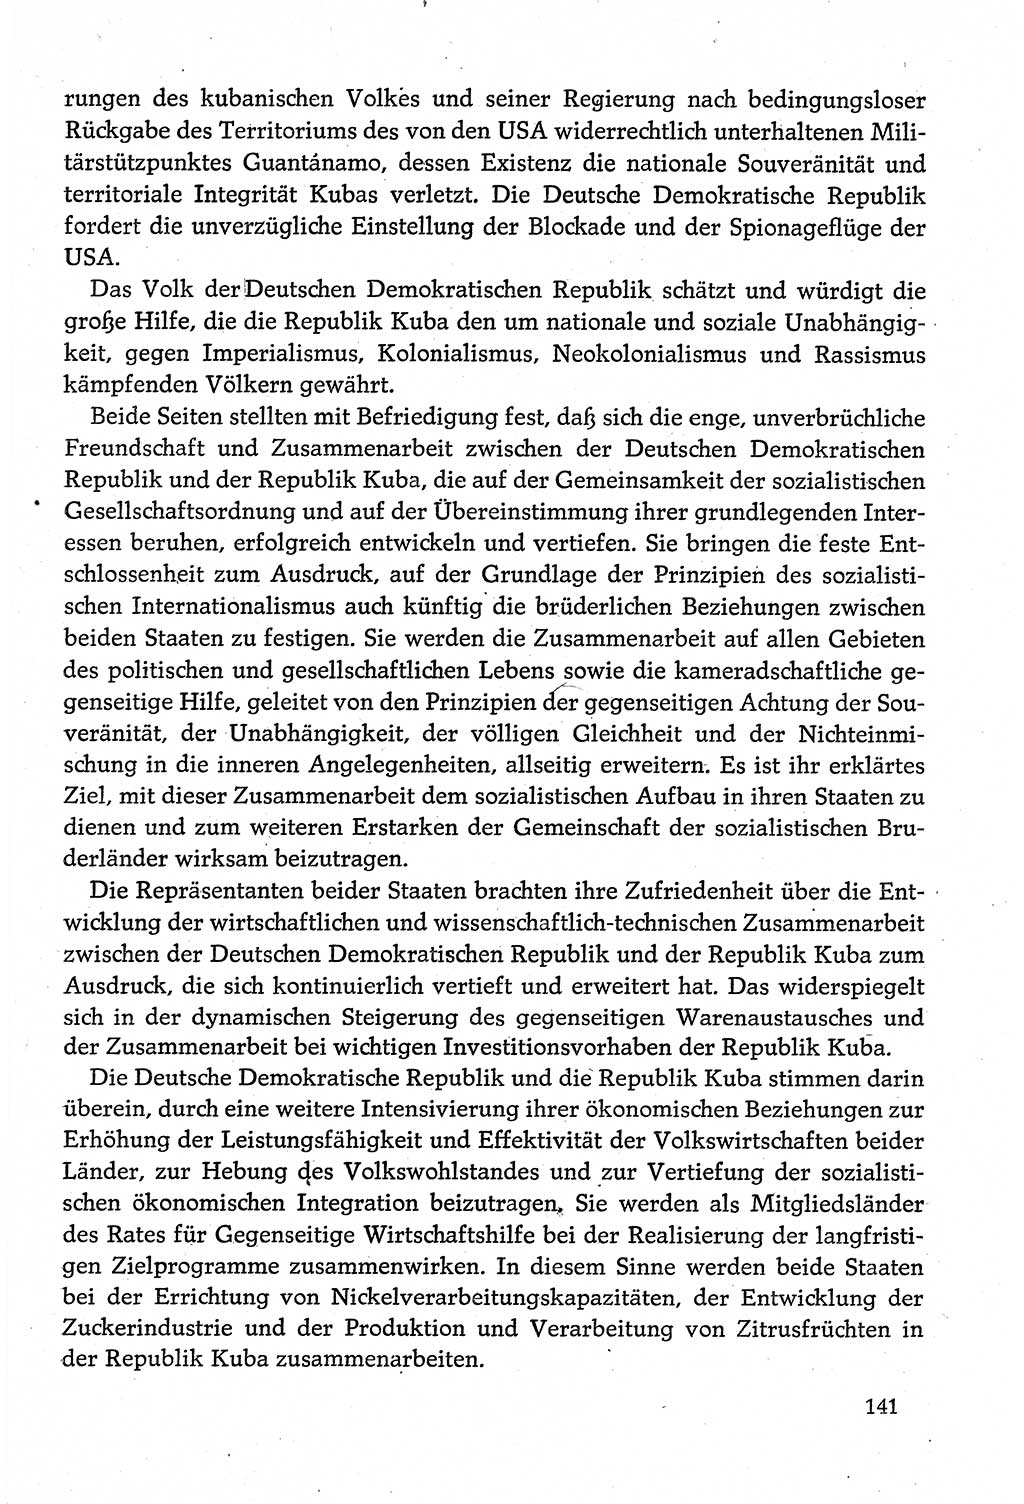 Dokumente der Sozialistischen Einheitspartei Deutschlands (SED) [Deutsche Demokratische Republik (DDR)] 1980-1981, Seite 141 (Dok. SED DDR 1980-1981, S. 141)